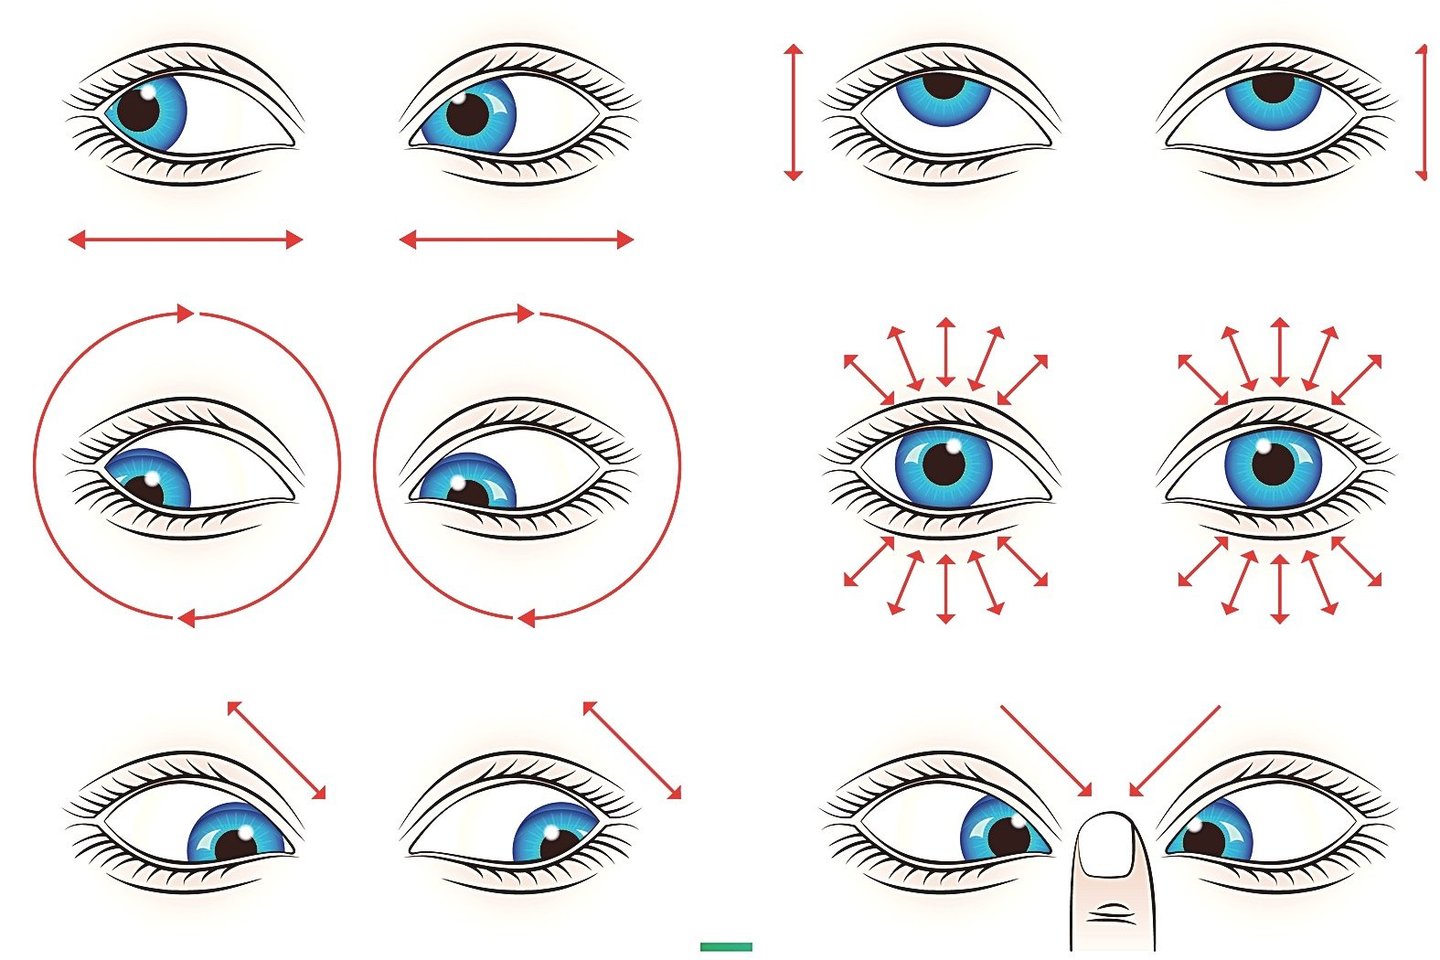  Akių judesių (žvilgsnio krypties keitimo) pratimai taip pat mažina akių nuovargį, padeda apsaugoti regėjimą, o kai kuriais atvejais gali jį netgi pagerinti.